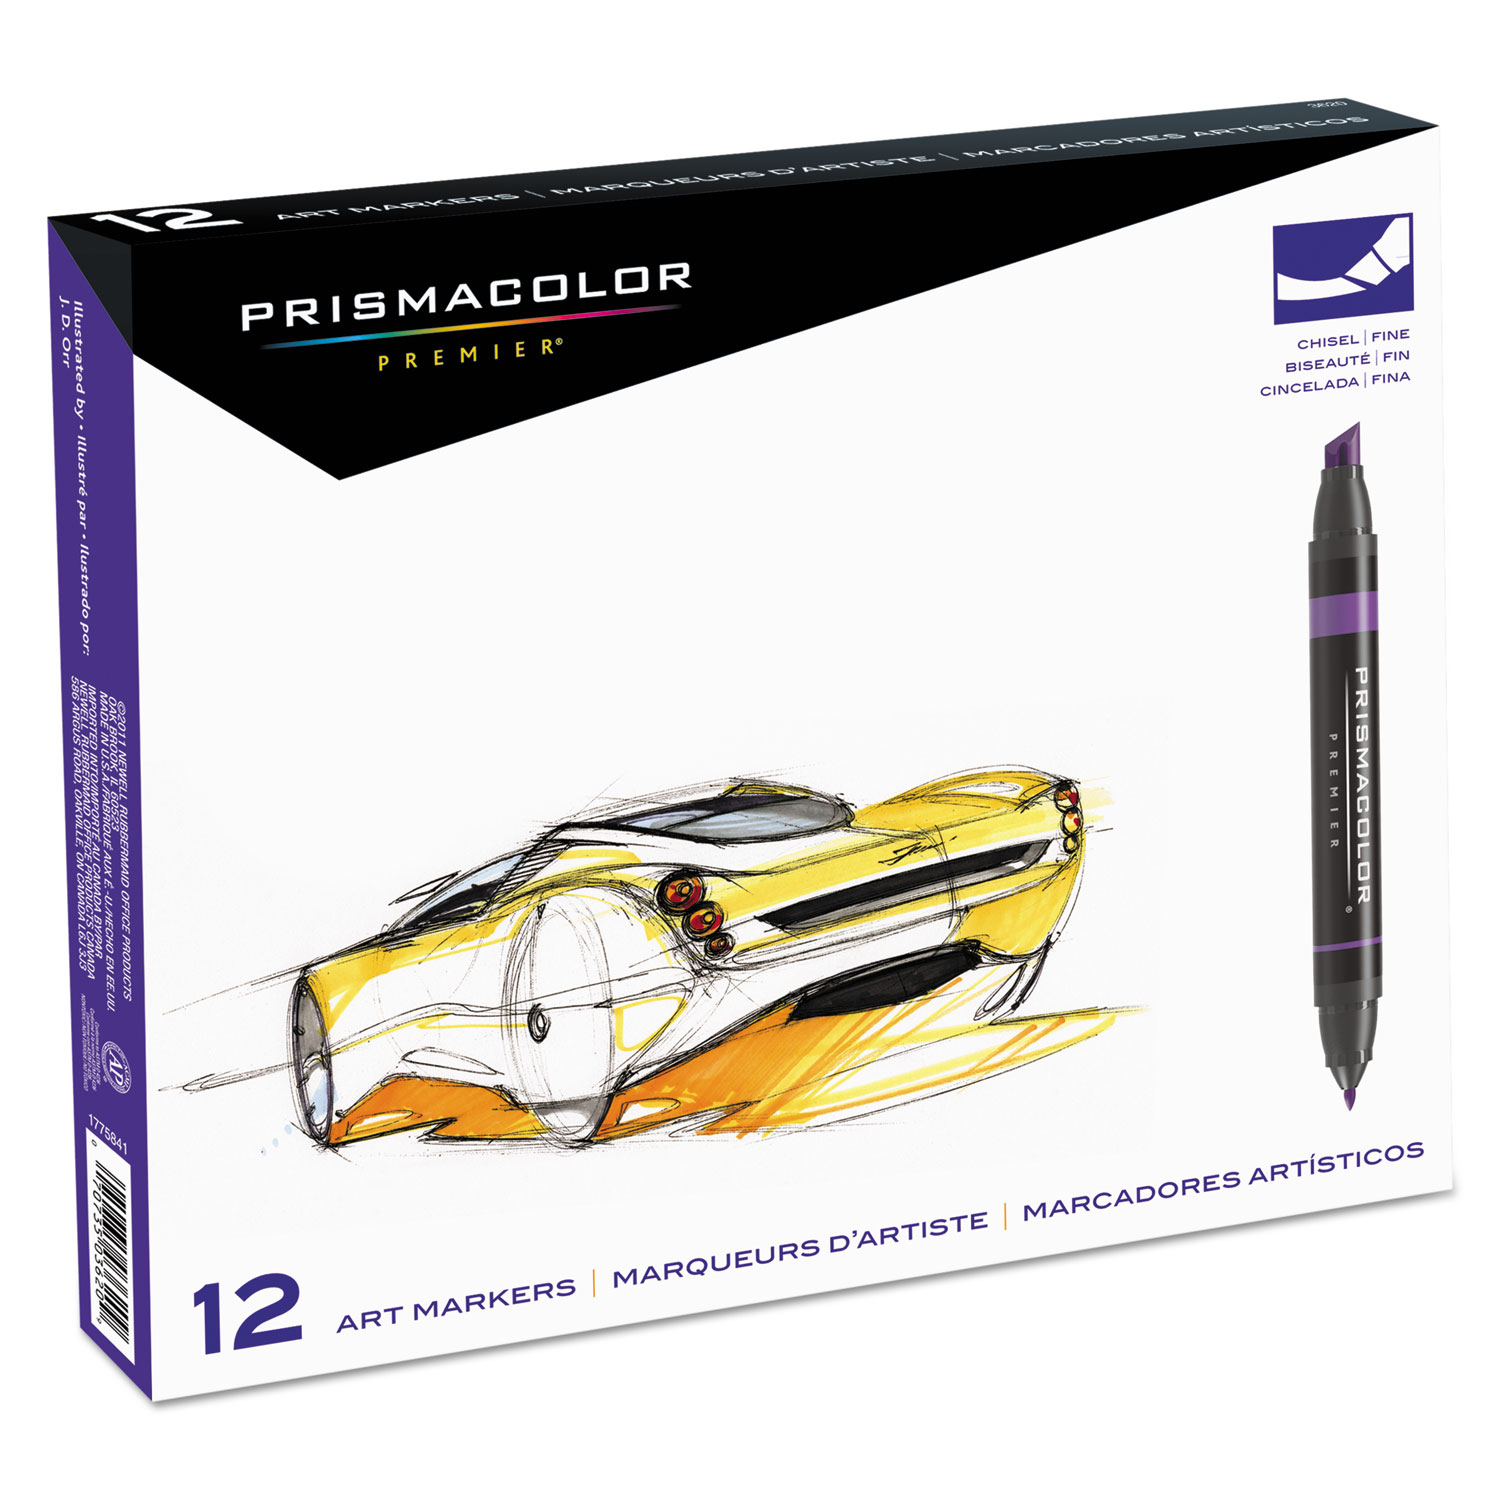  Prismacolor 3620 Premier Art Marker Set, Fine/Broad Bullet/Chisel Tips, Assorted Colors, 12/Set (SAN3620) 